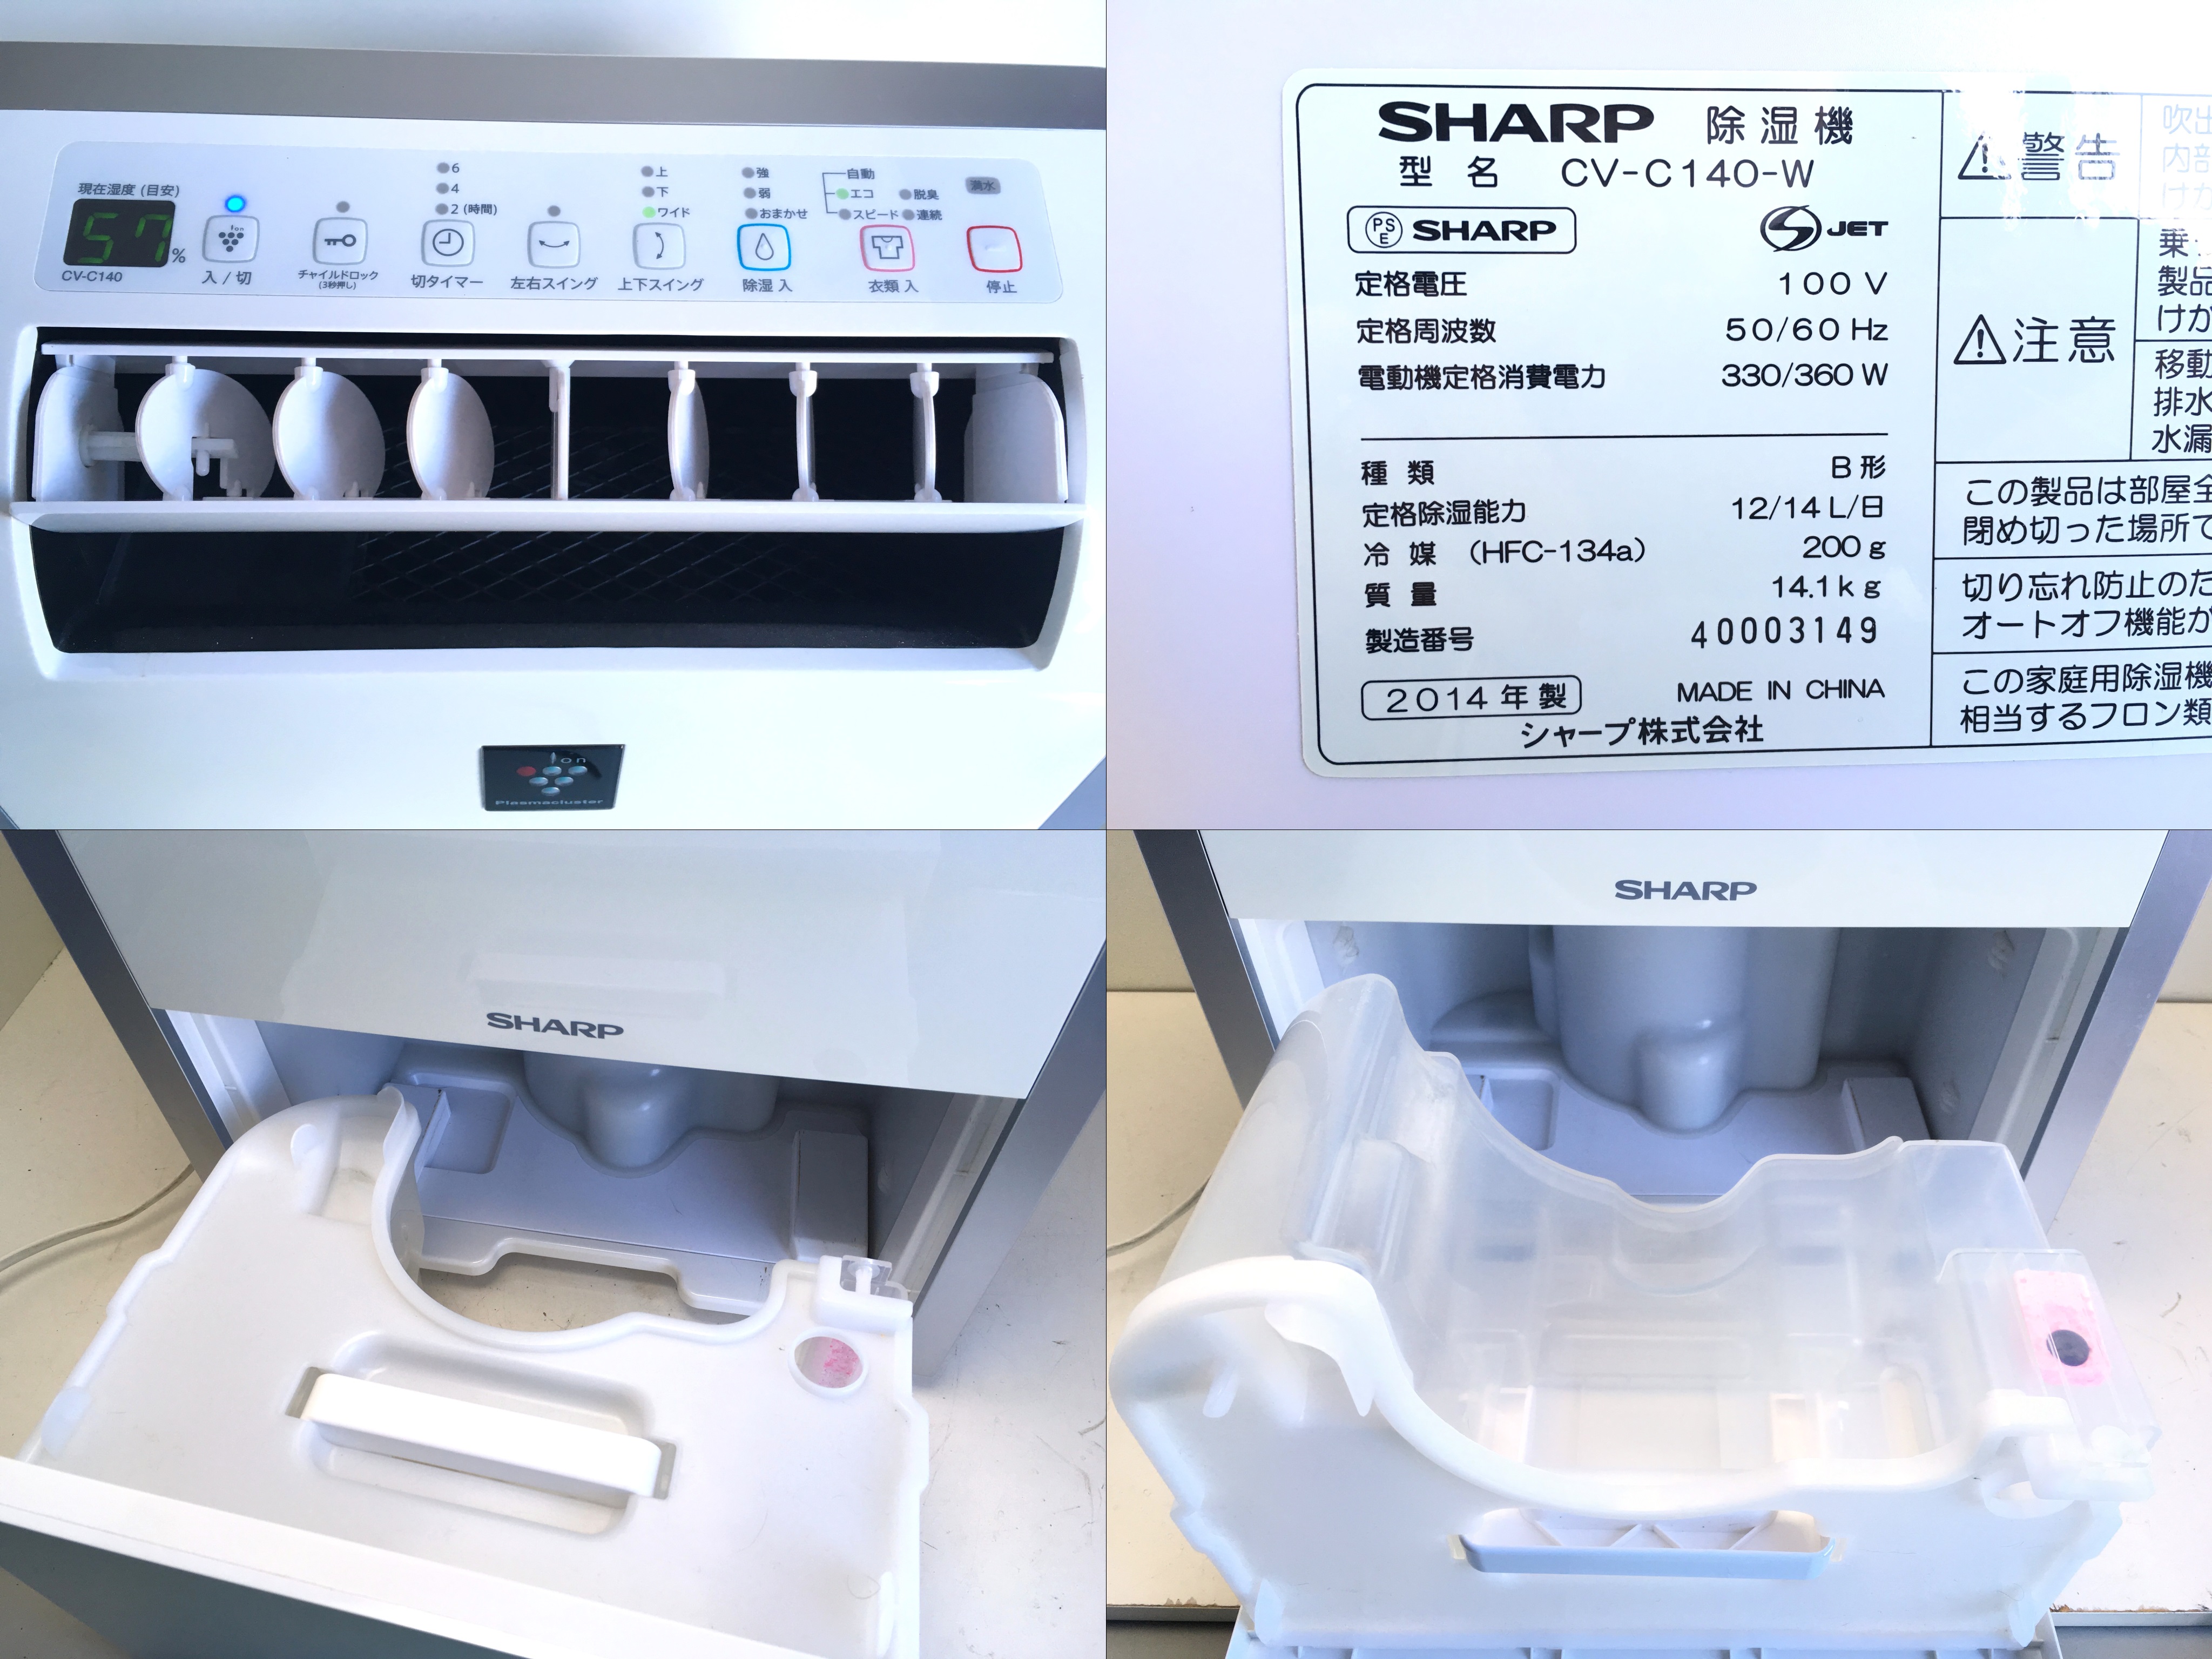 SHARP 除湿器 CV-C140-W【2014年製】